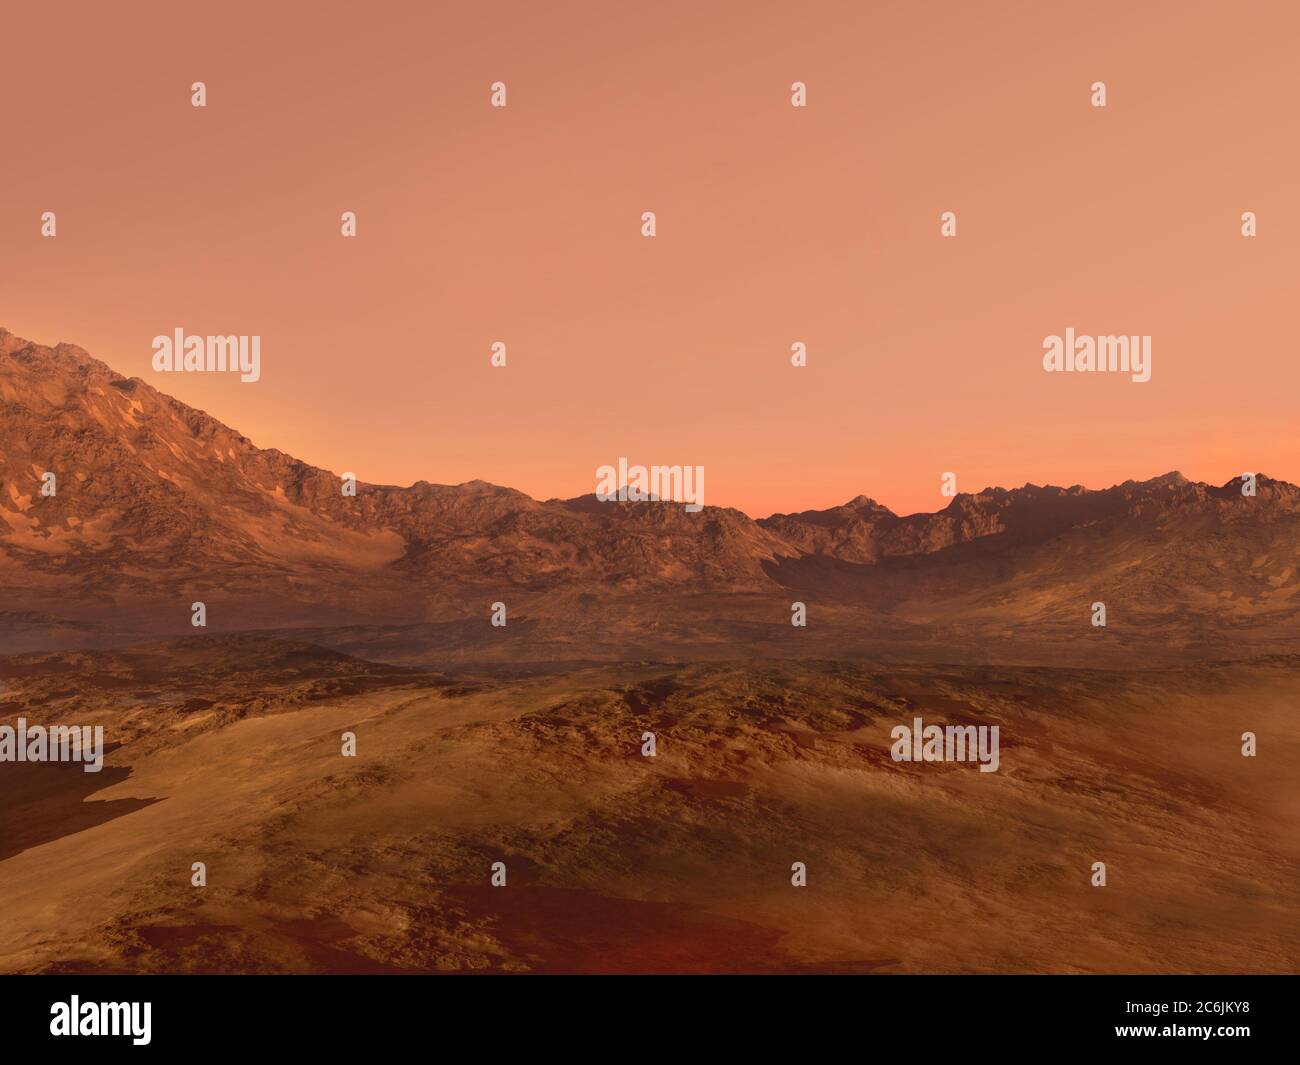 3D-Mars-Landschaftsrendering mit rotem felsigem Gelände, für Science-Fiction- oder Weltraumforschung Hintergründe. Stockfoto